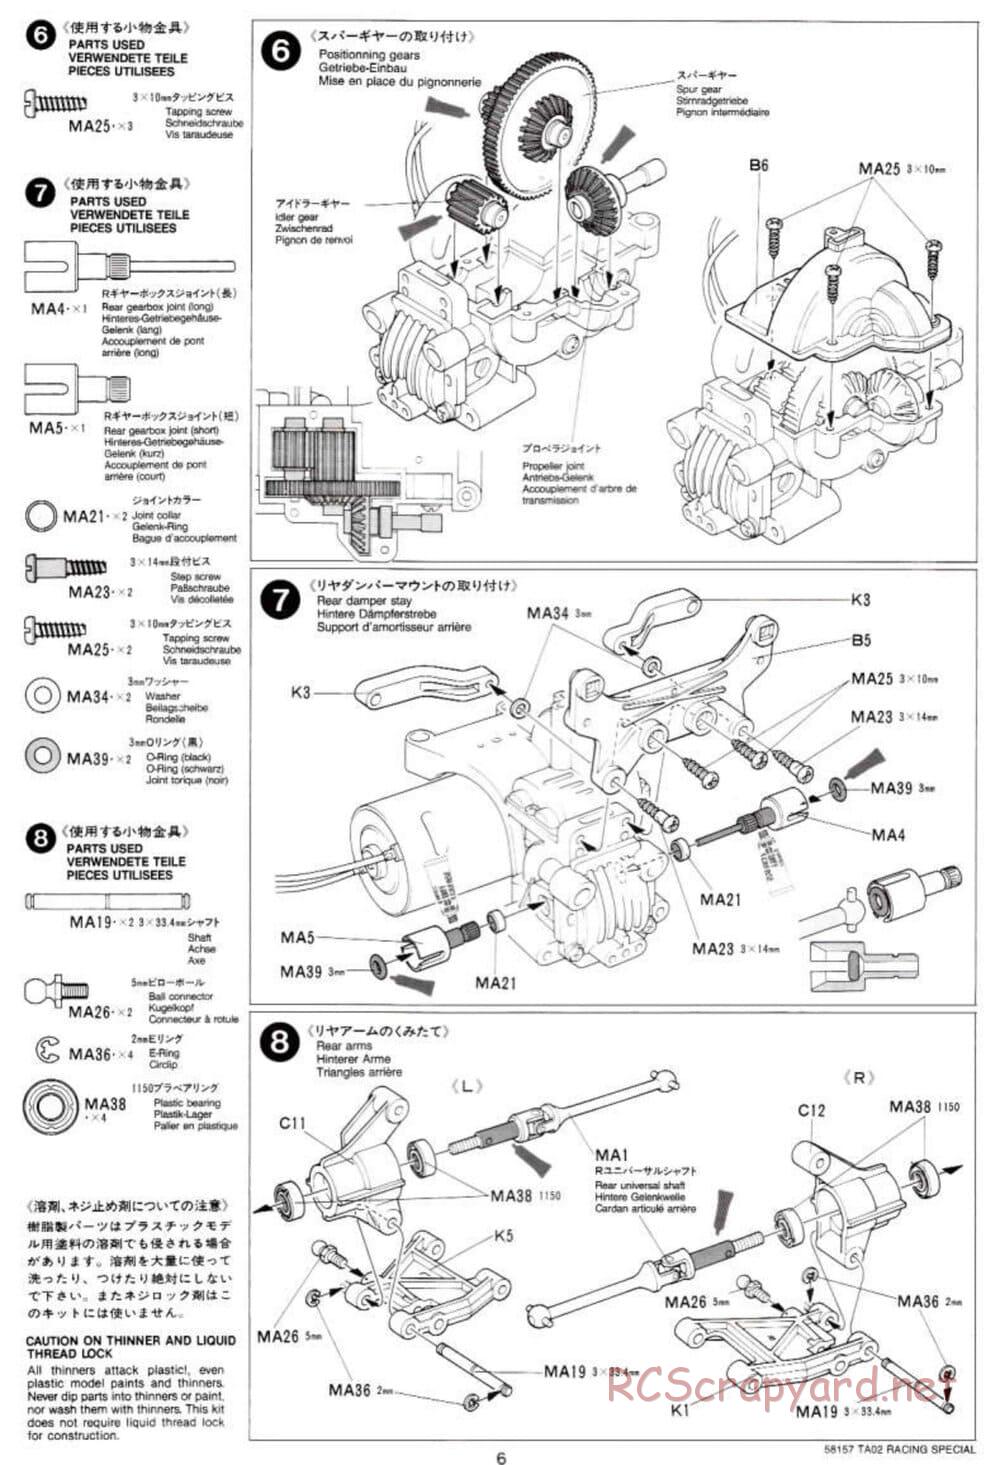 Tamiya - TA-02RS Chassis - Manual - Page 6